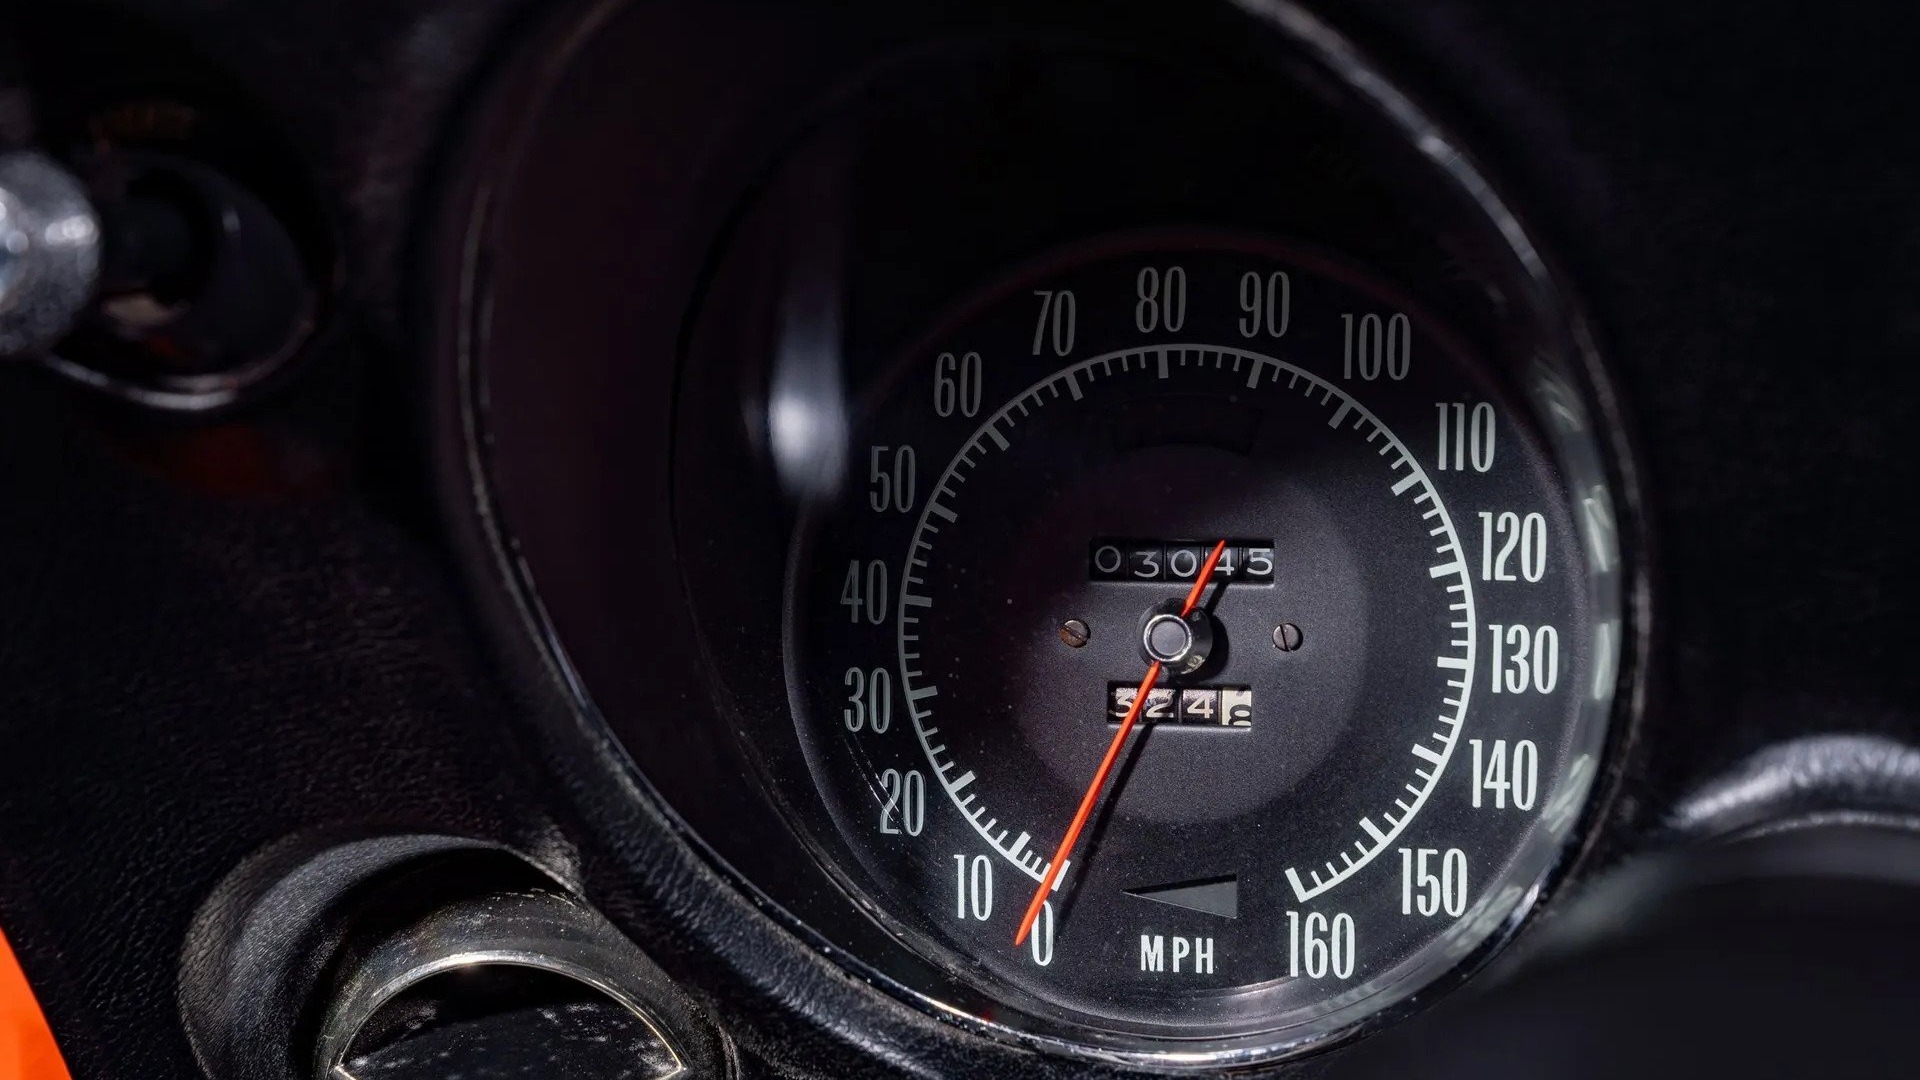 Et speedometer som går helt til 160 miles per hour var ikke akkurat dagligdags i en amerikansk bil i 1969.